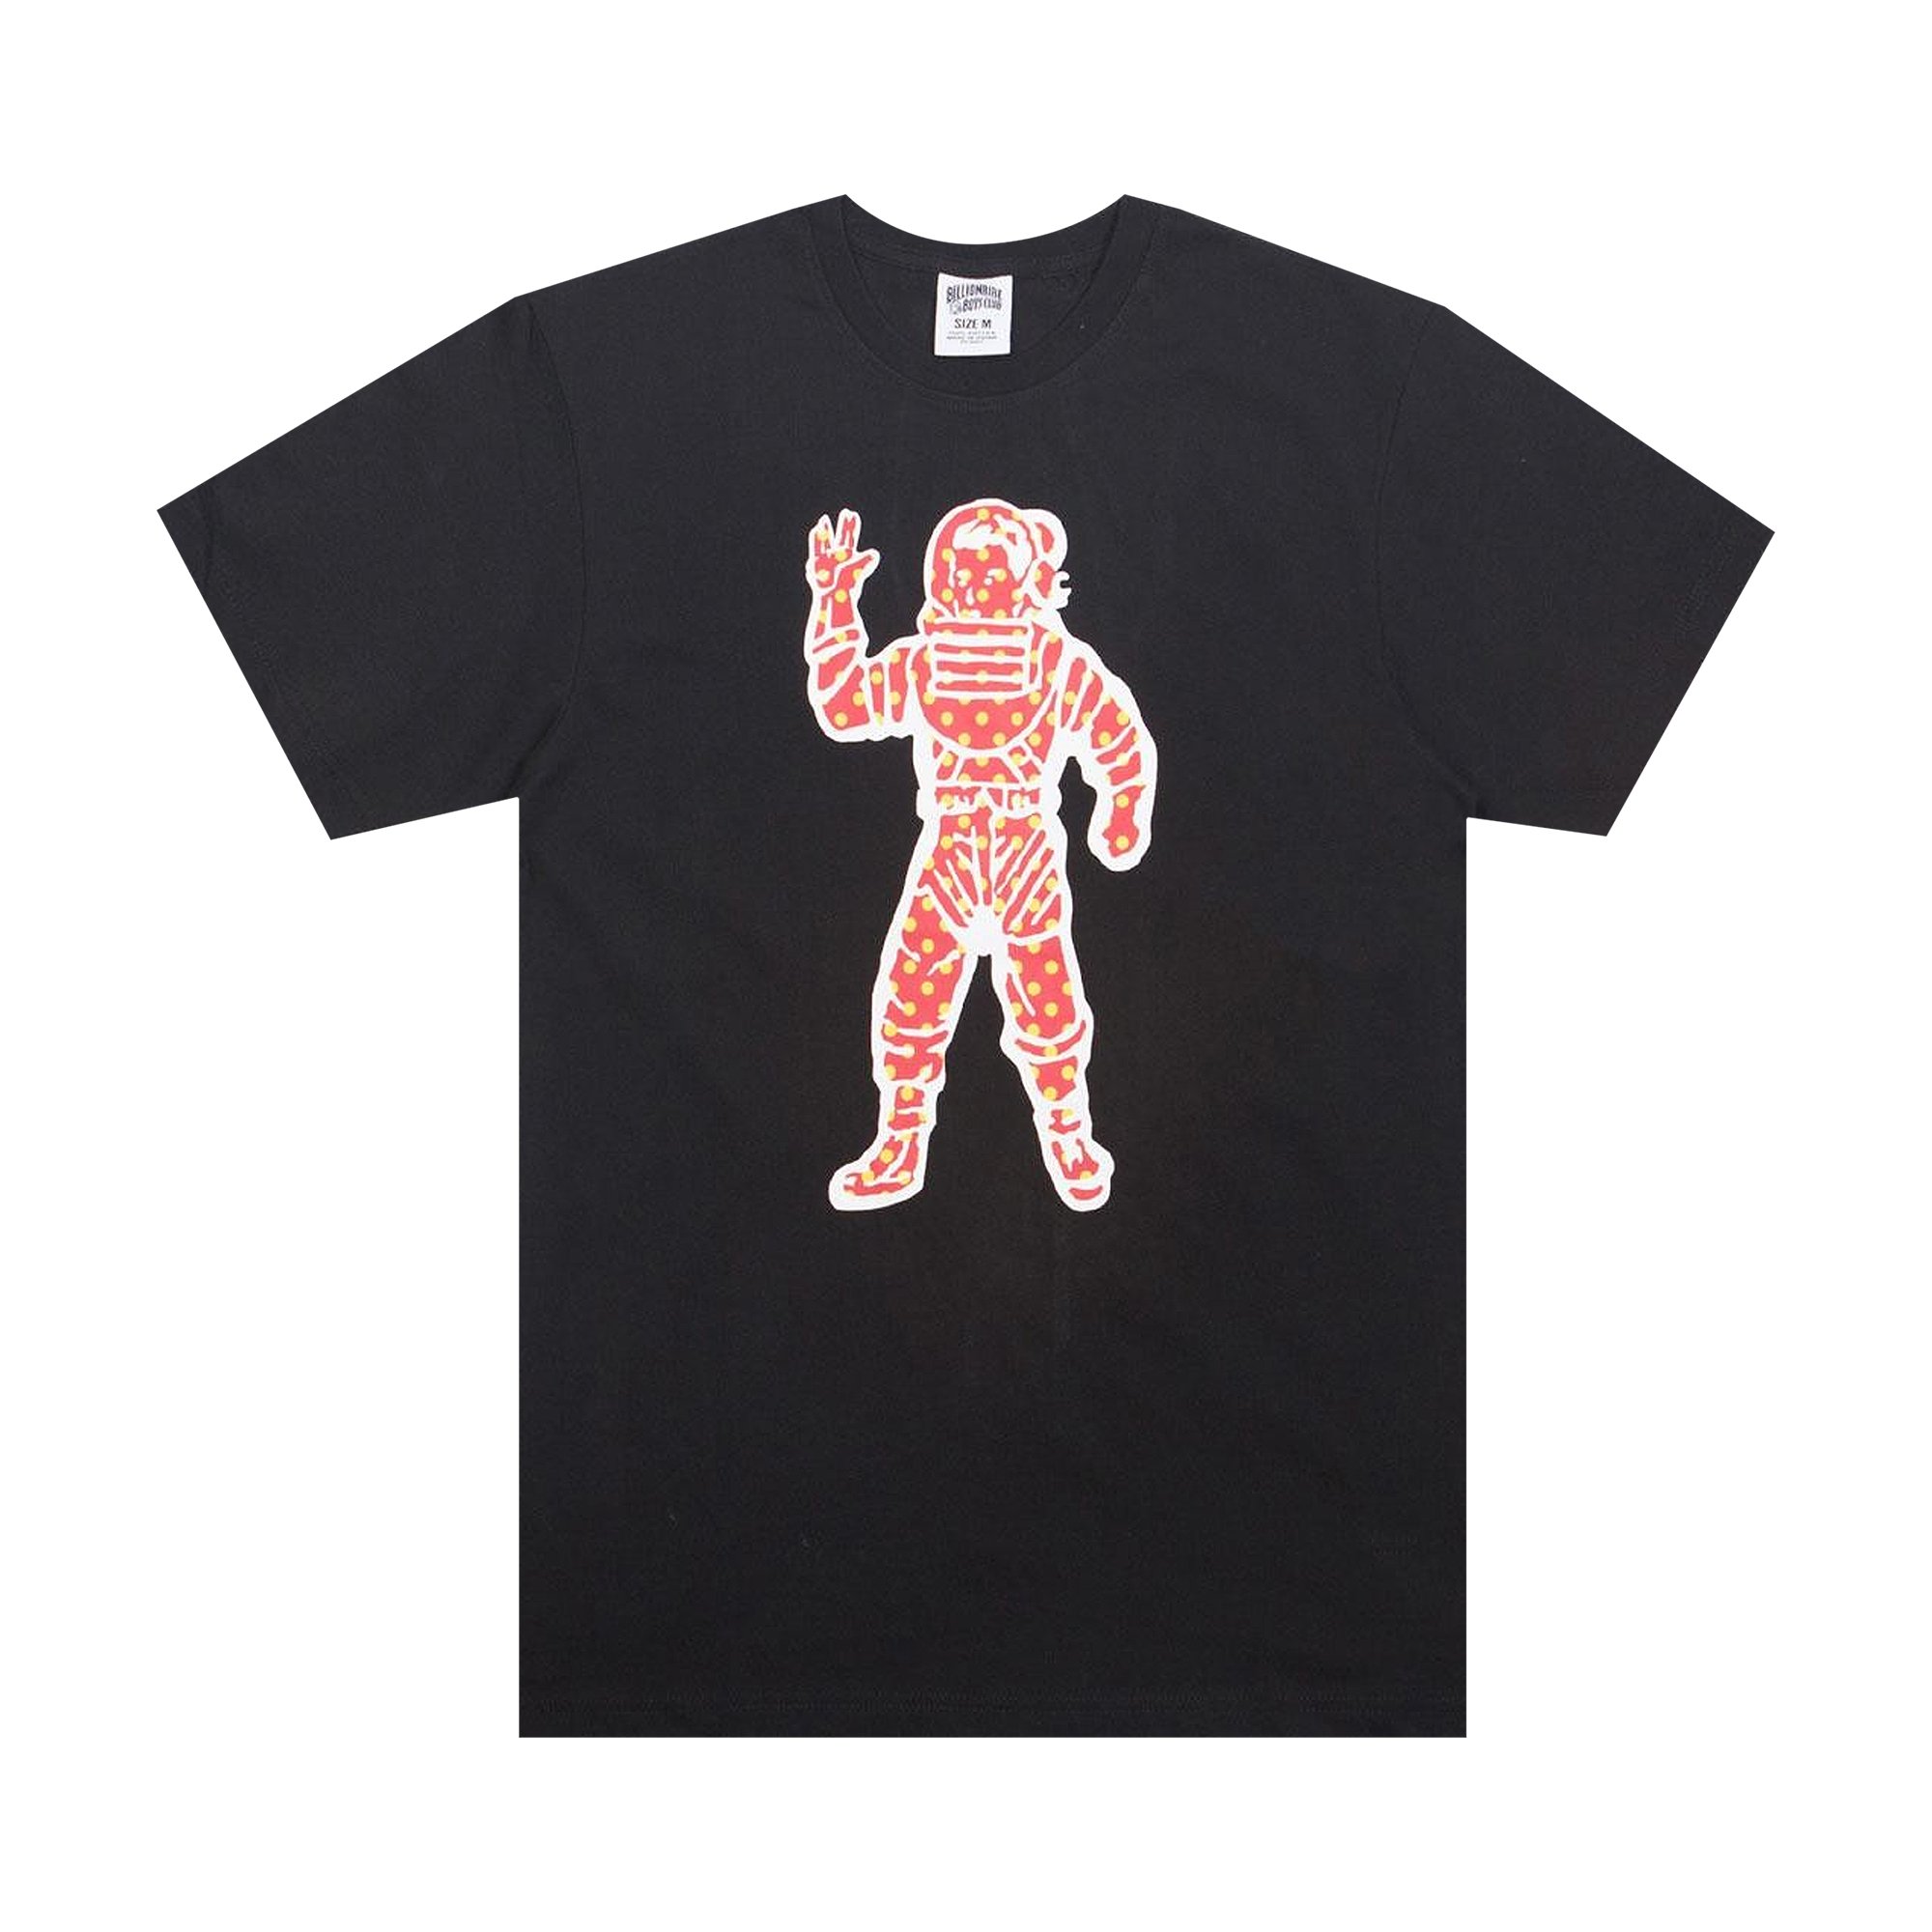 клуб миллиардеров dvd Клуб мальчиков-миллиардеров заметил черную футболку астронавта